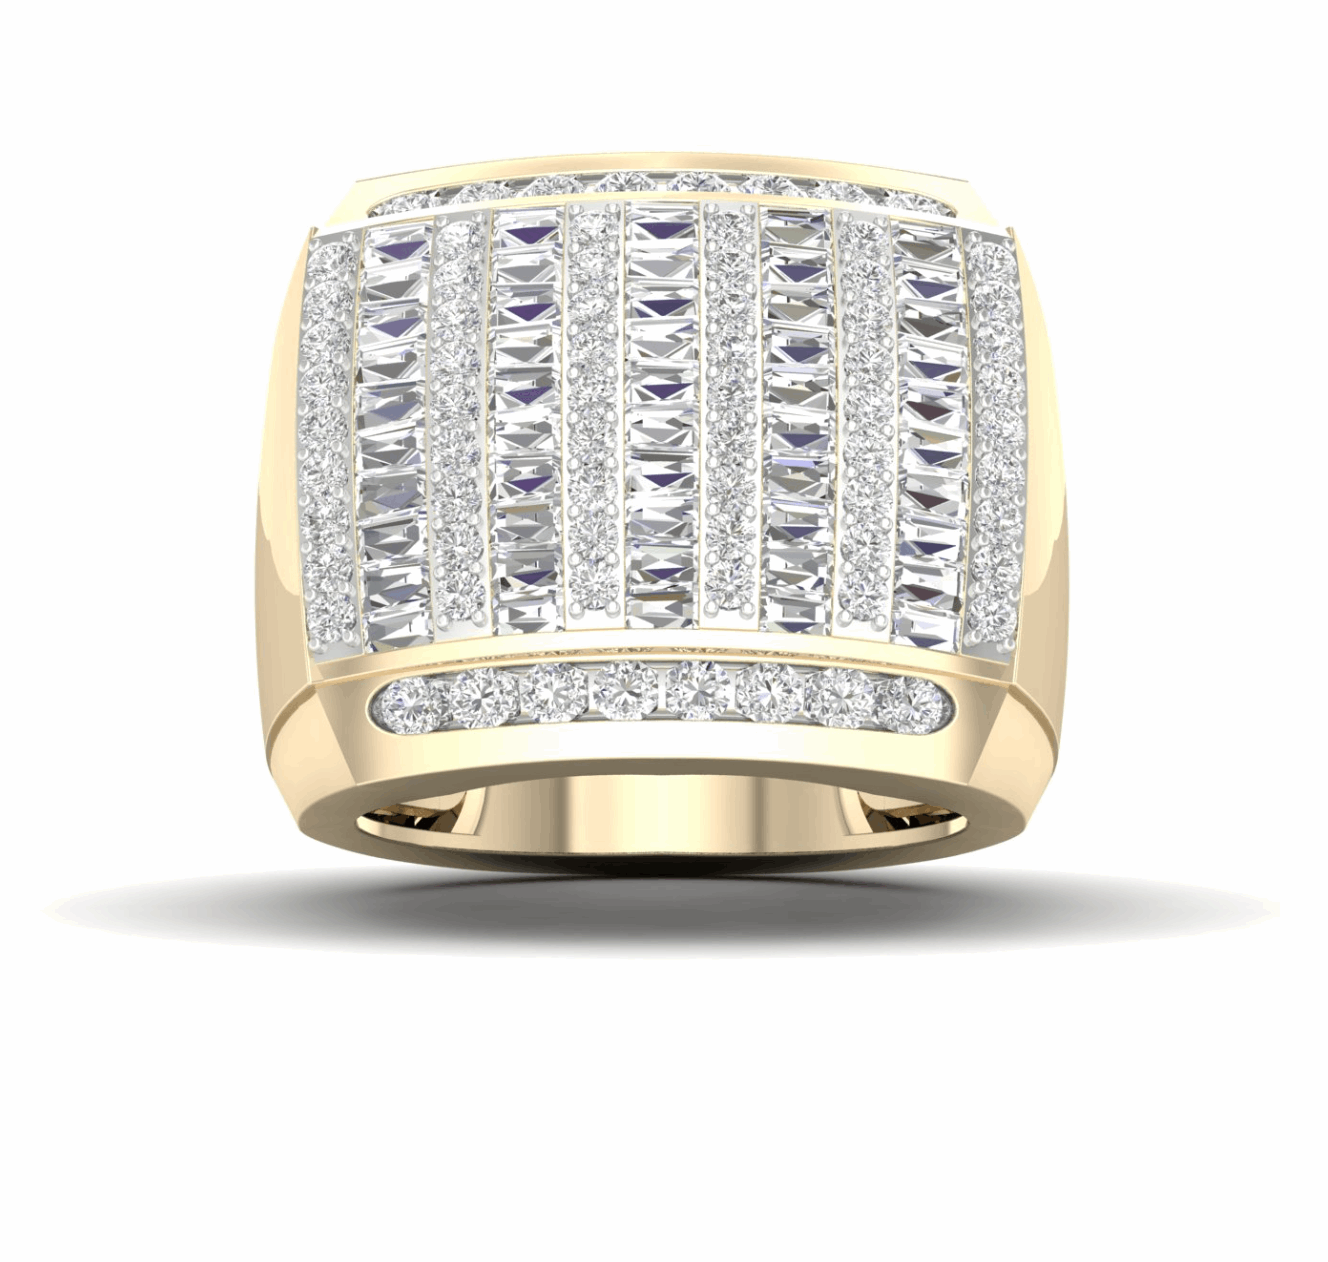 10K Gold Diamond Men's Ring 2.75CT